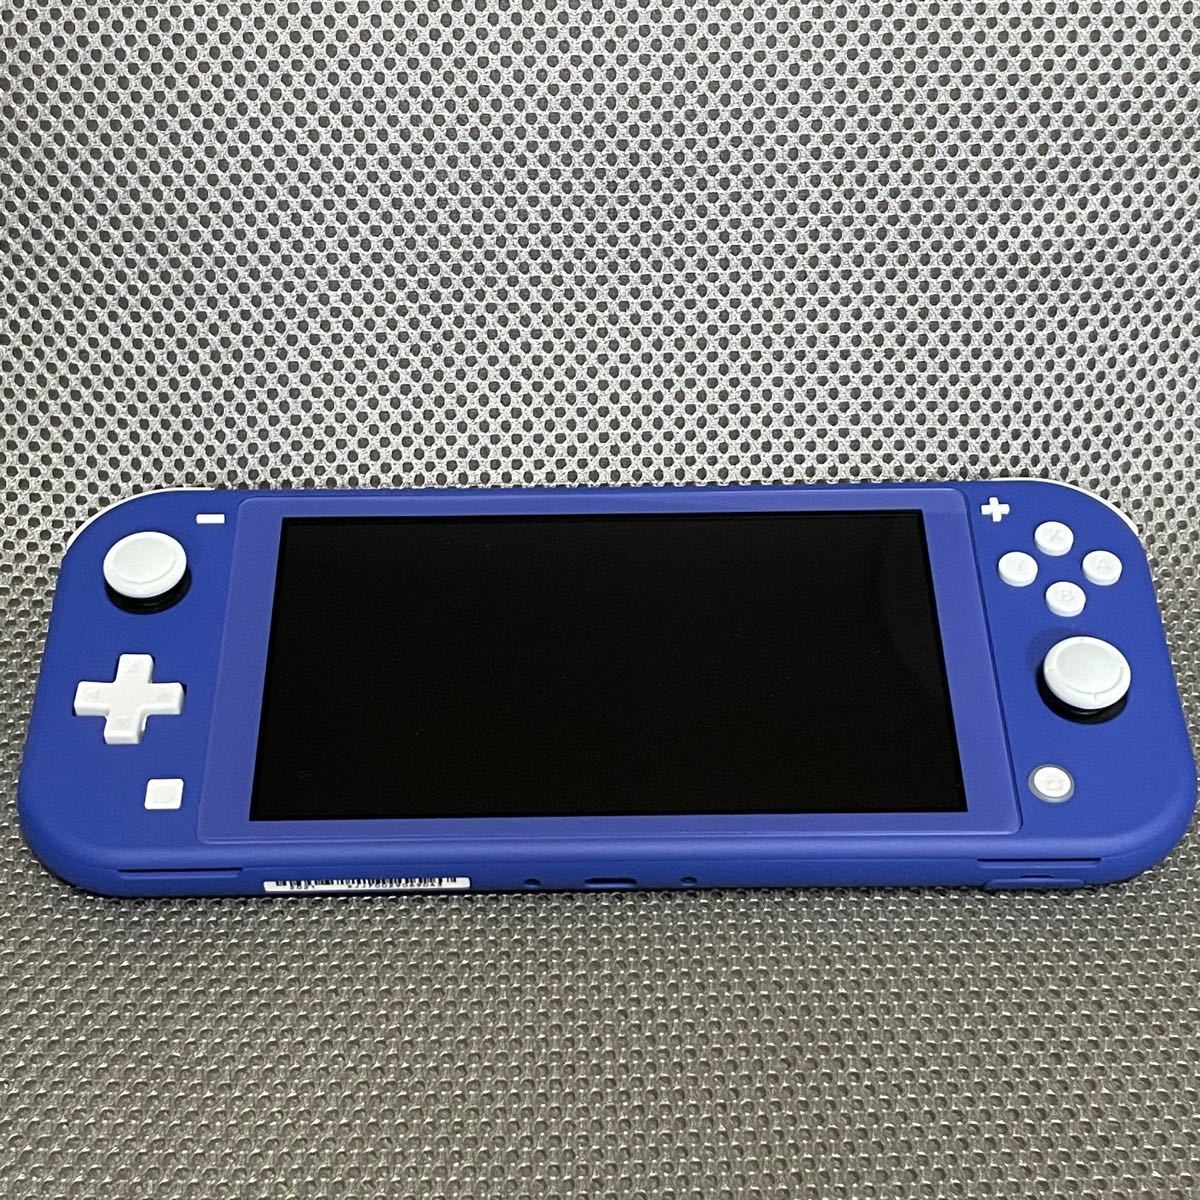 100%正規品 Nintendo Switch Lite 本体 ブルー 16台セット sushitai.com.mx